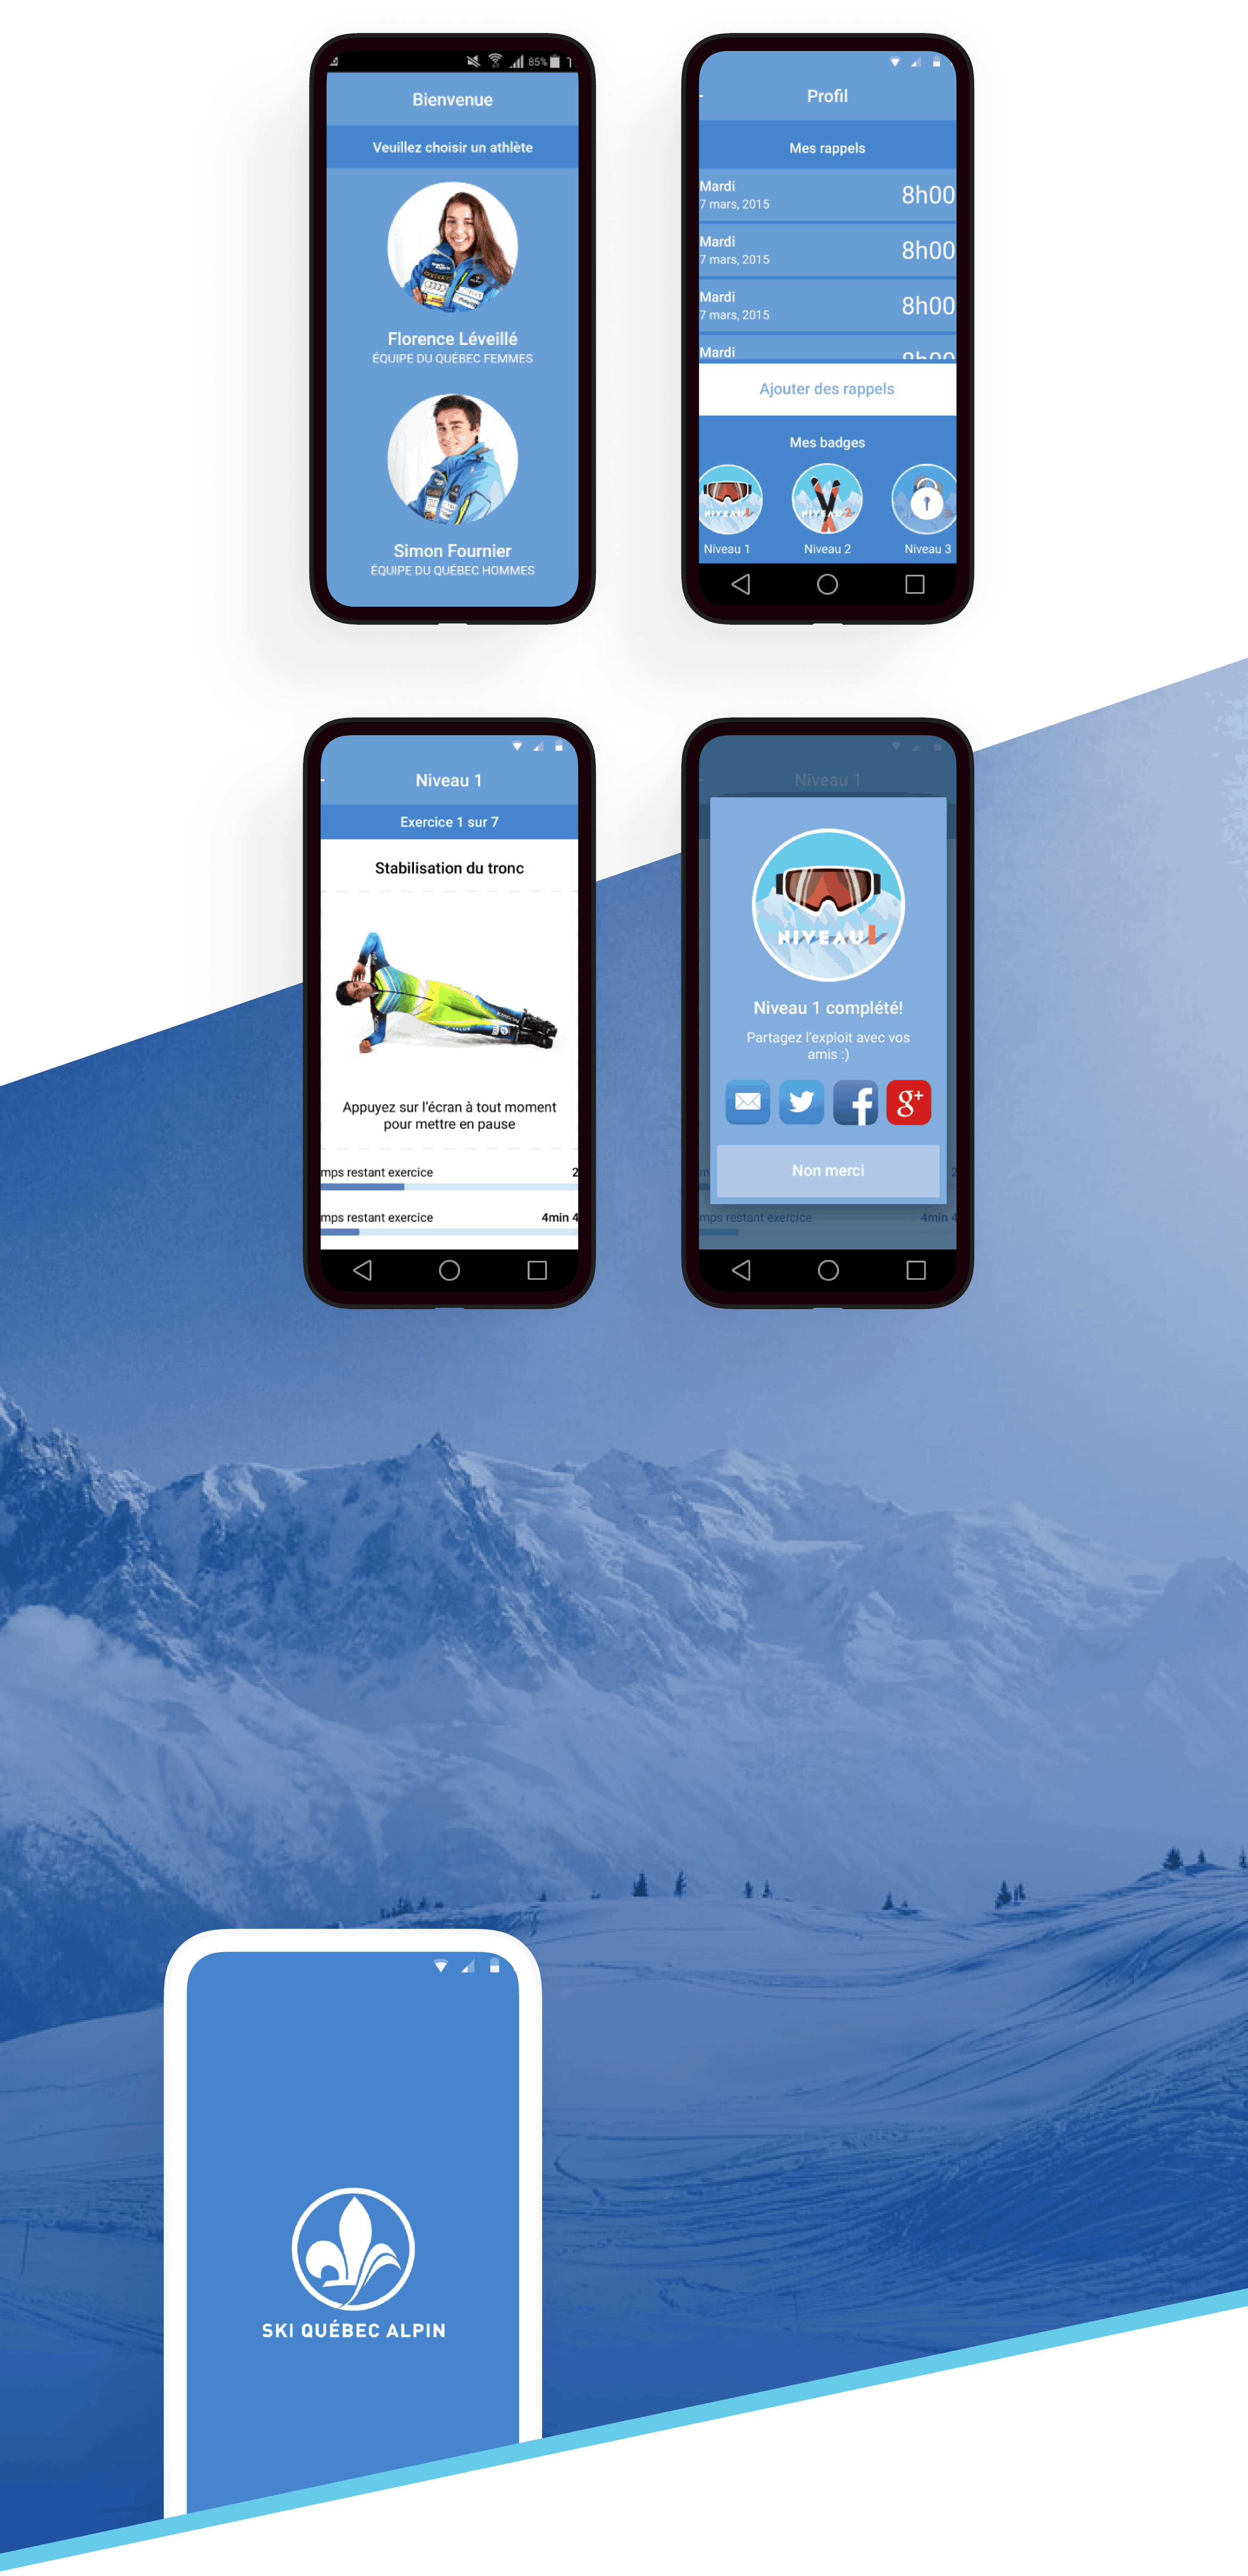 Ski Québec Alpin sur une téléphone mobile